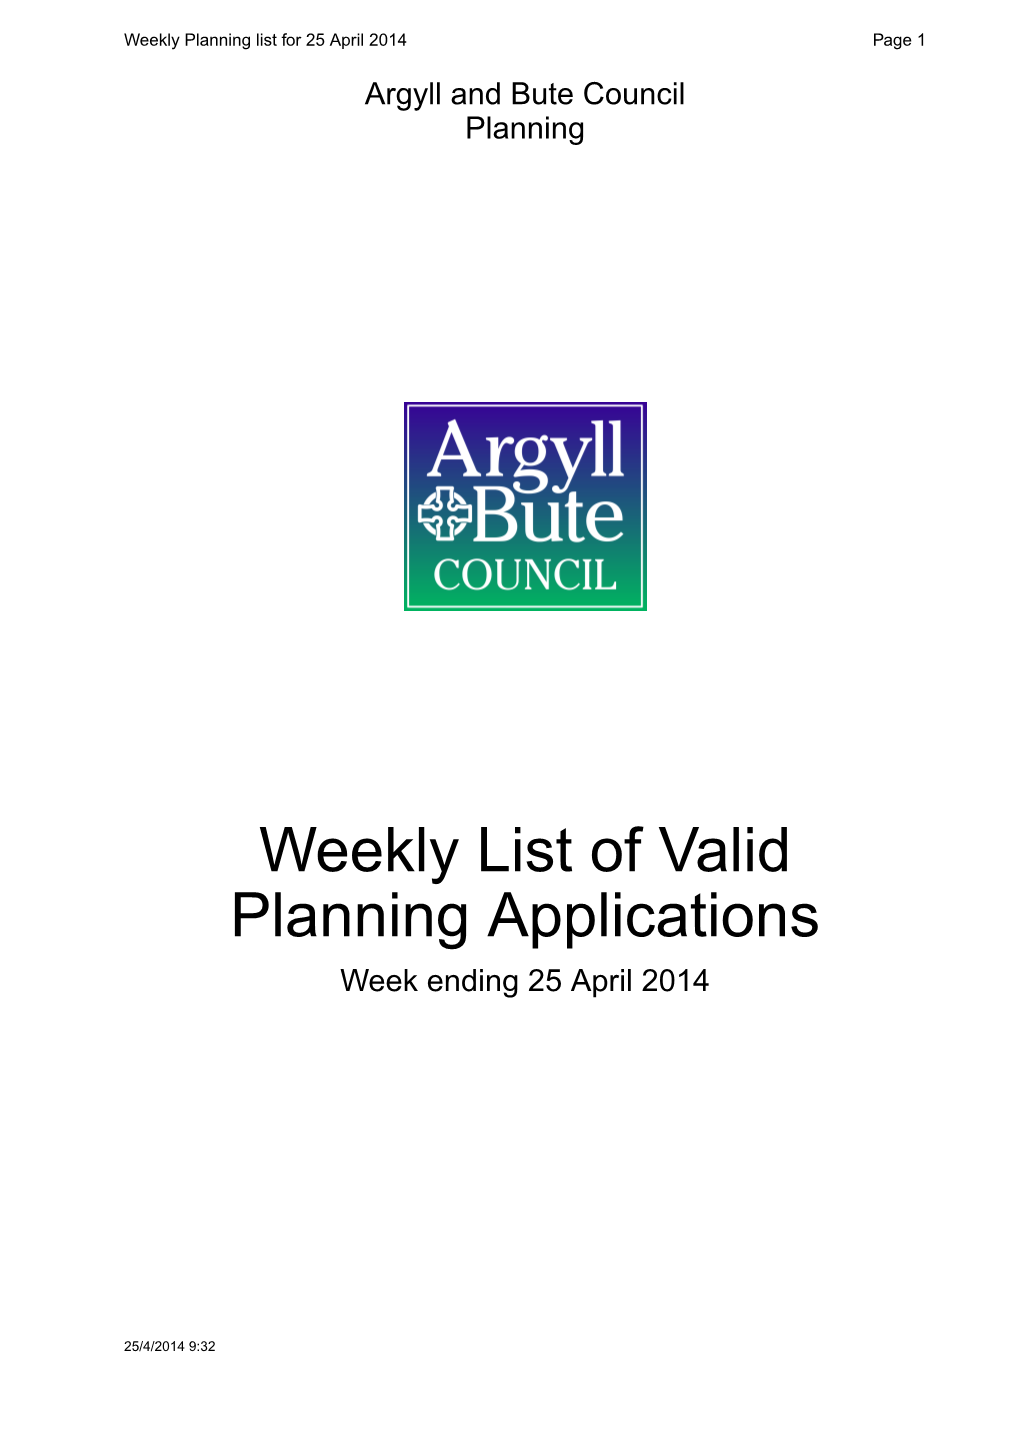 Weekly List of Valid Planning Applications Week Ending 25 April 2014